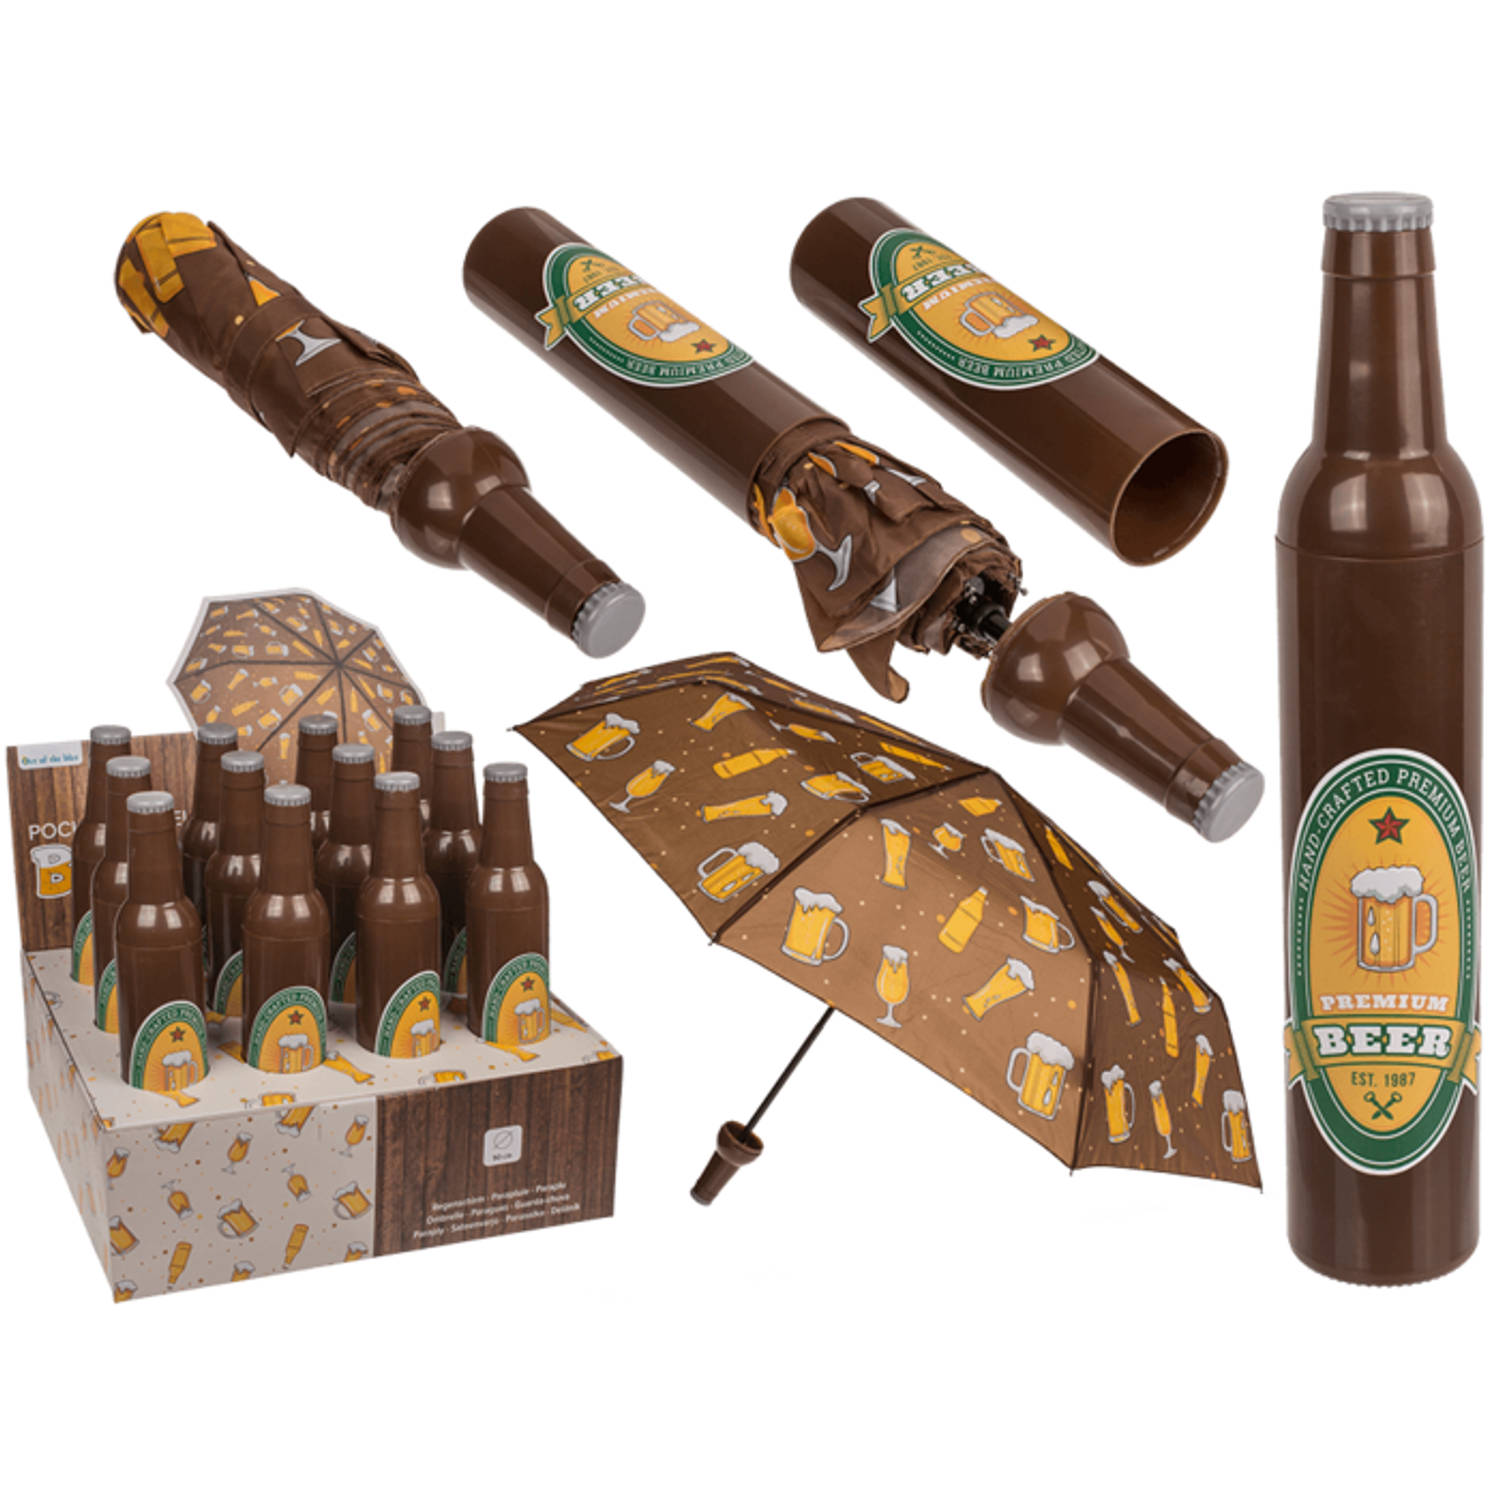 Gespierd Afrika Goed opgeleid Bier paraplu - De paraplu die elke bierliefhebber nodig heeft - Opvouwbaar  - Pocket Umbrella | Blokker